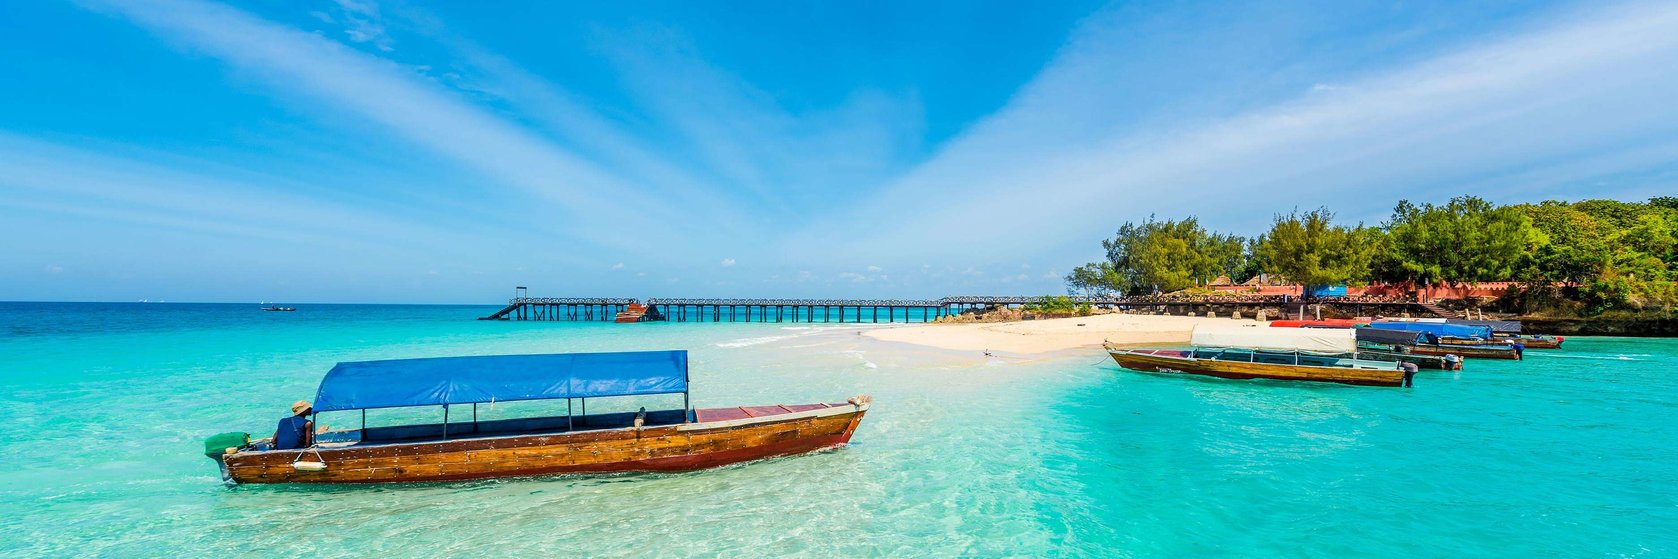 Zábava a volný čas na Zanzibaru